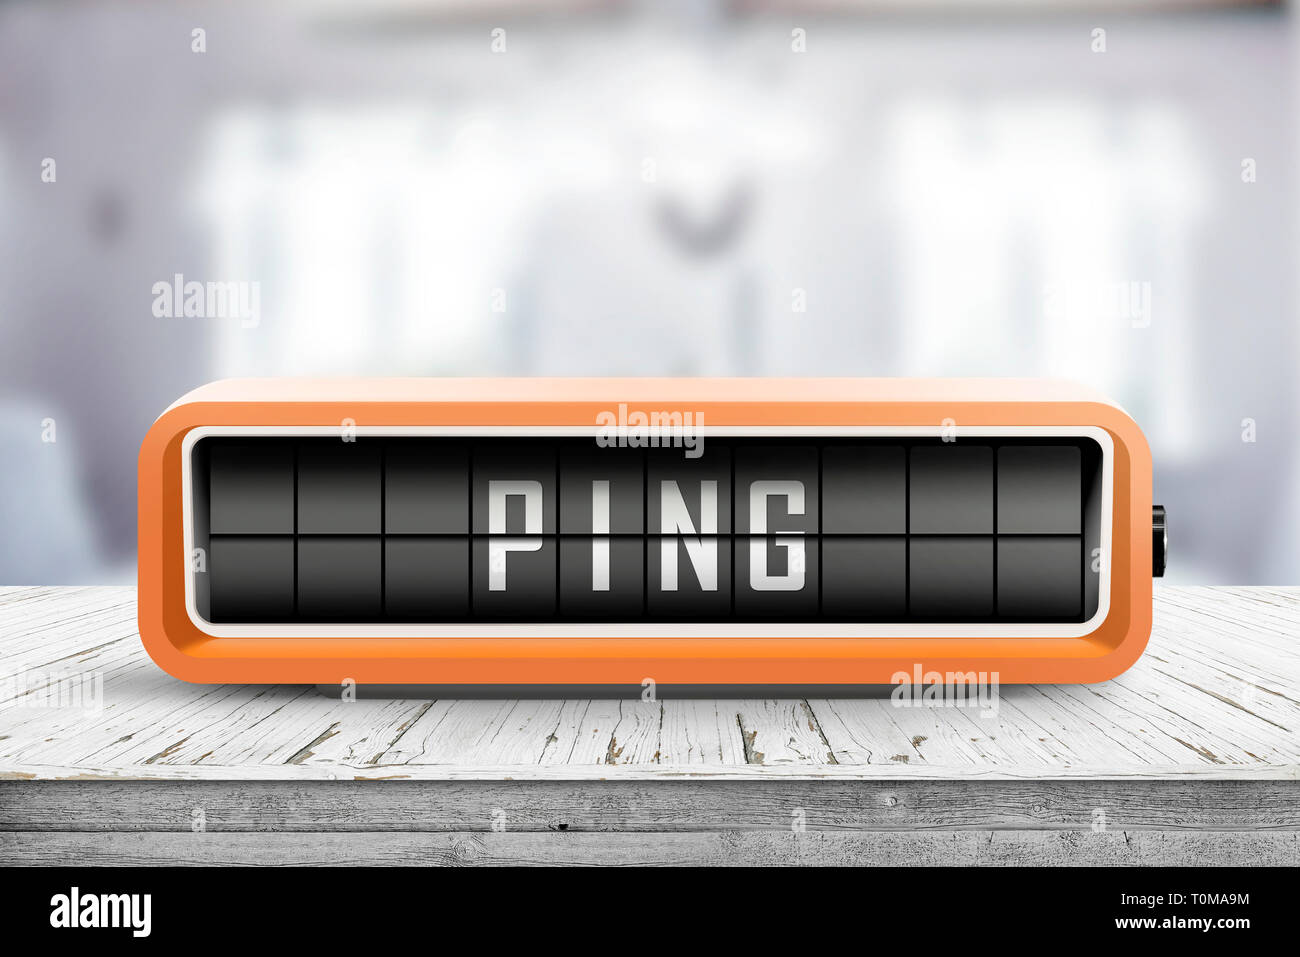 Dispositivo de retro con la palabra Ping sobre una mesa de madera en una habitación Foto de stock